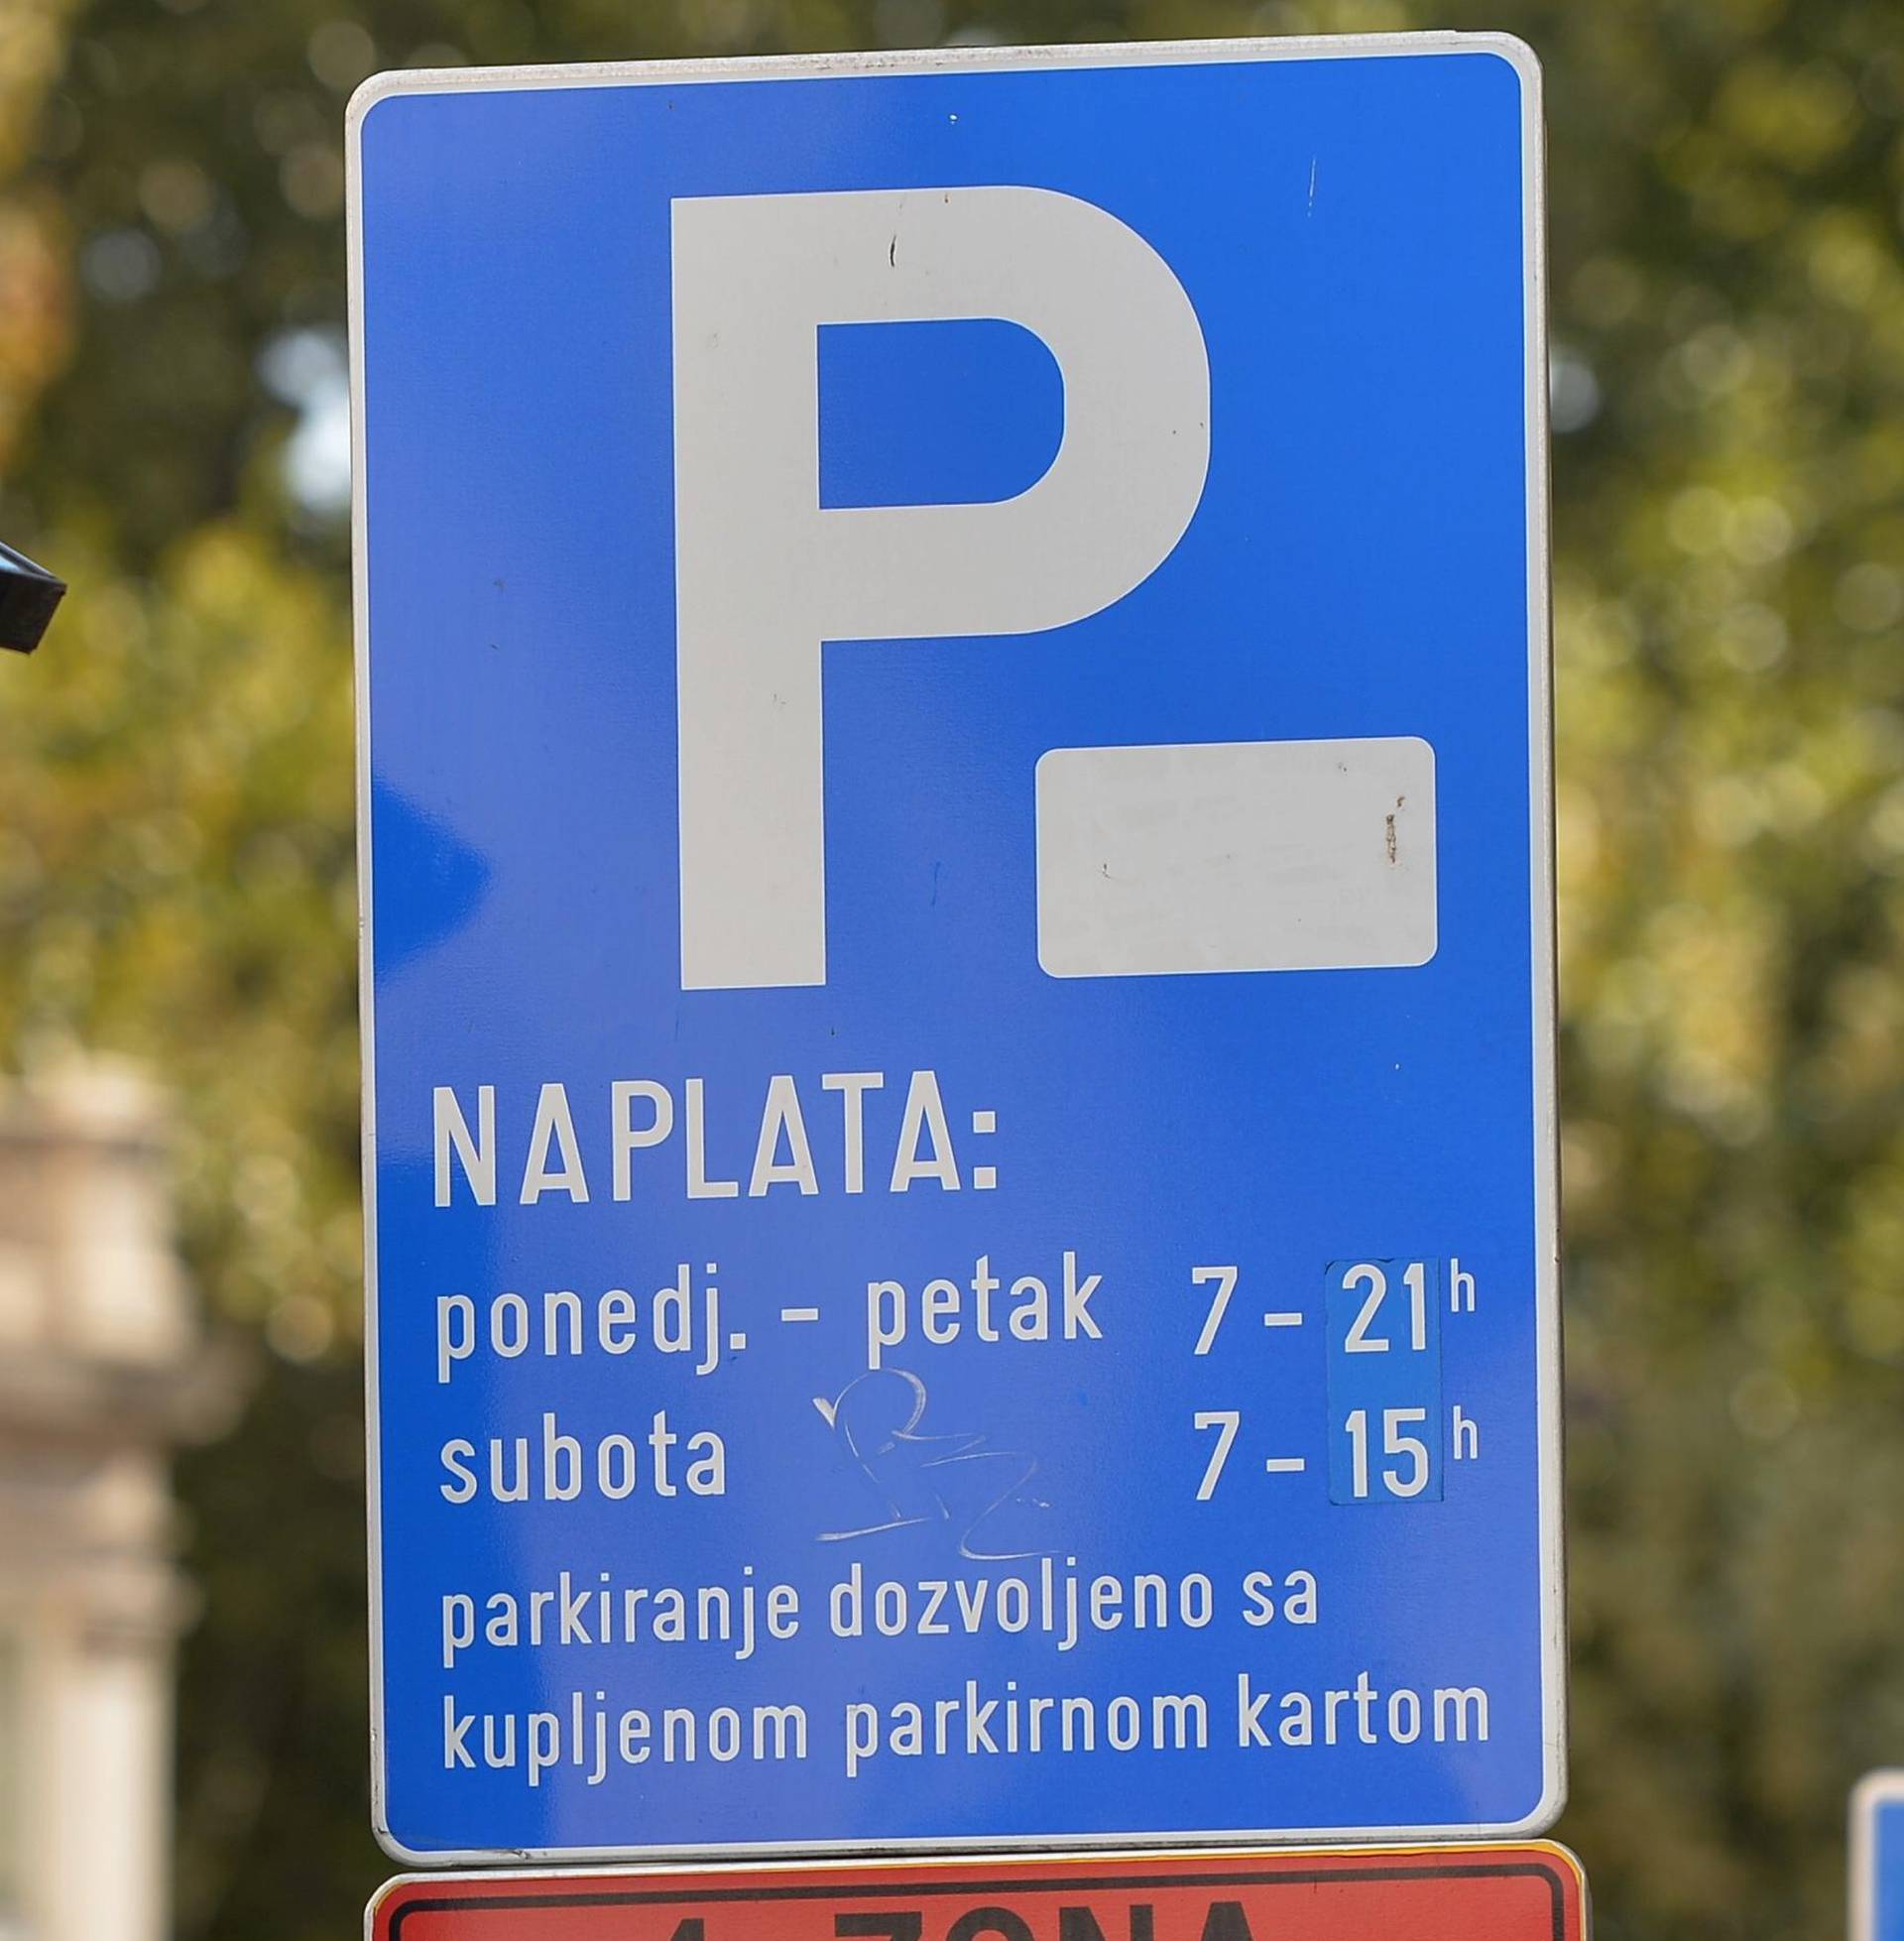 U nekim dijelovima Zagreba se ipak ukida naplata parkiranja